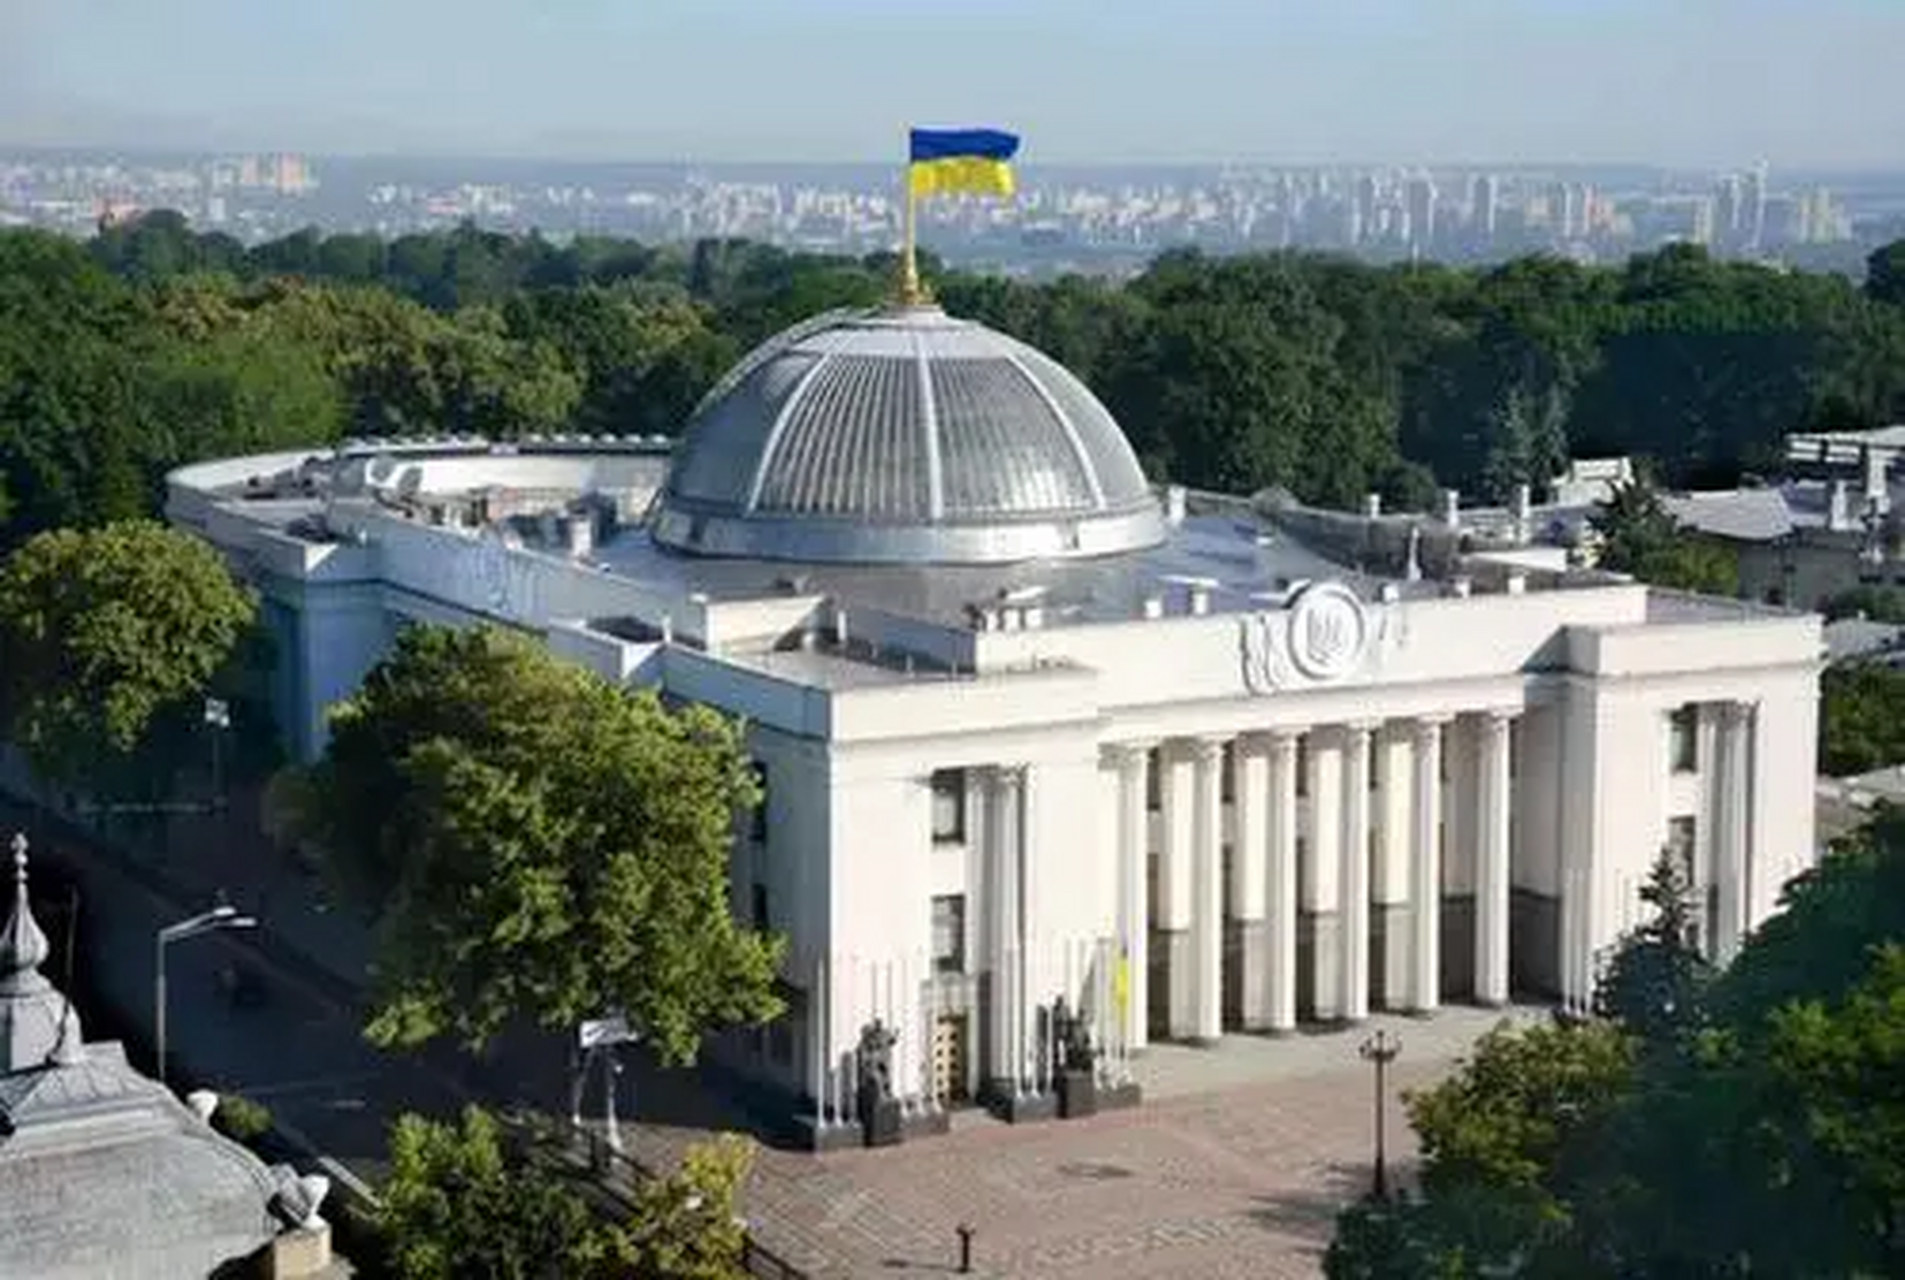 乌克兰总统府夜景图片